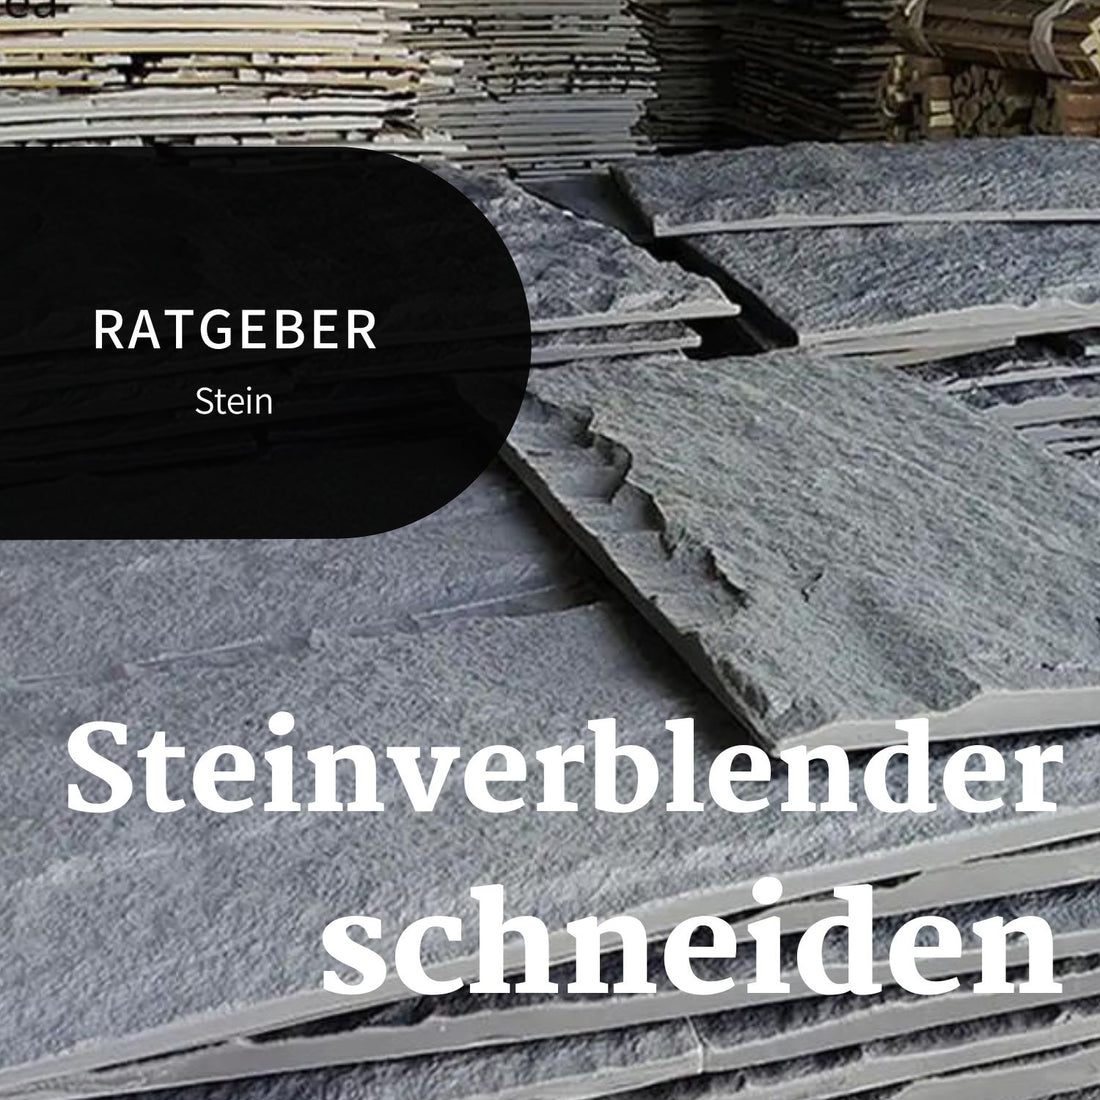 Stein Verblender schneiden Ratgeber Bannerbild von Klinkerstein für die Hausfassade